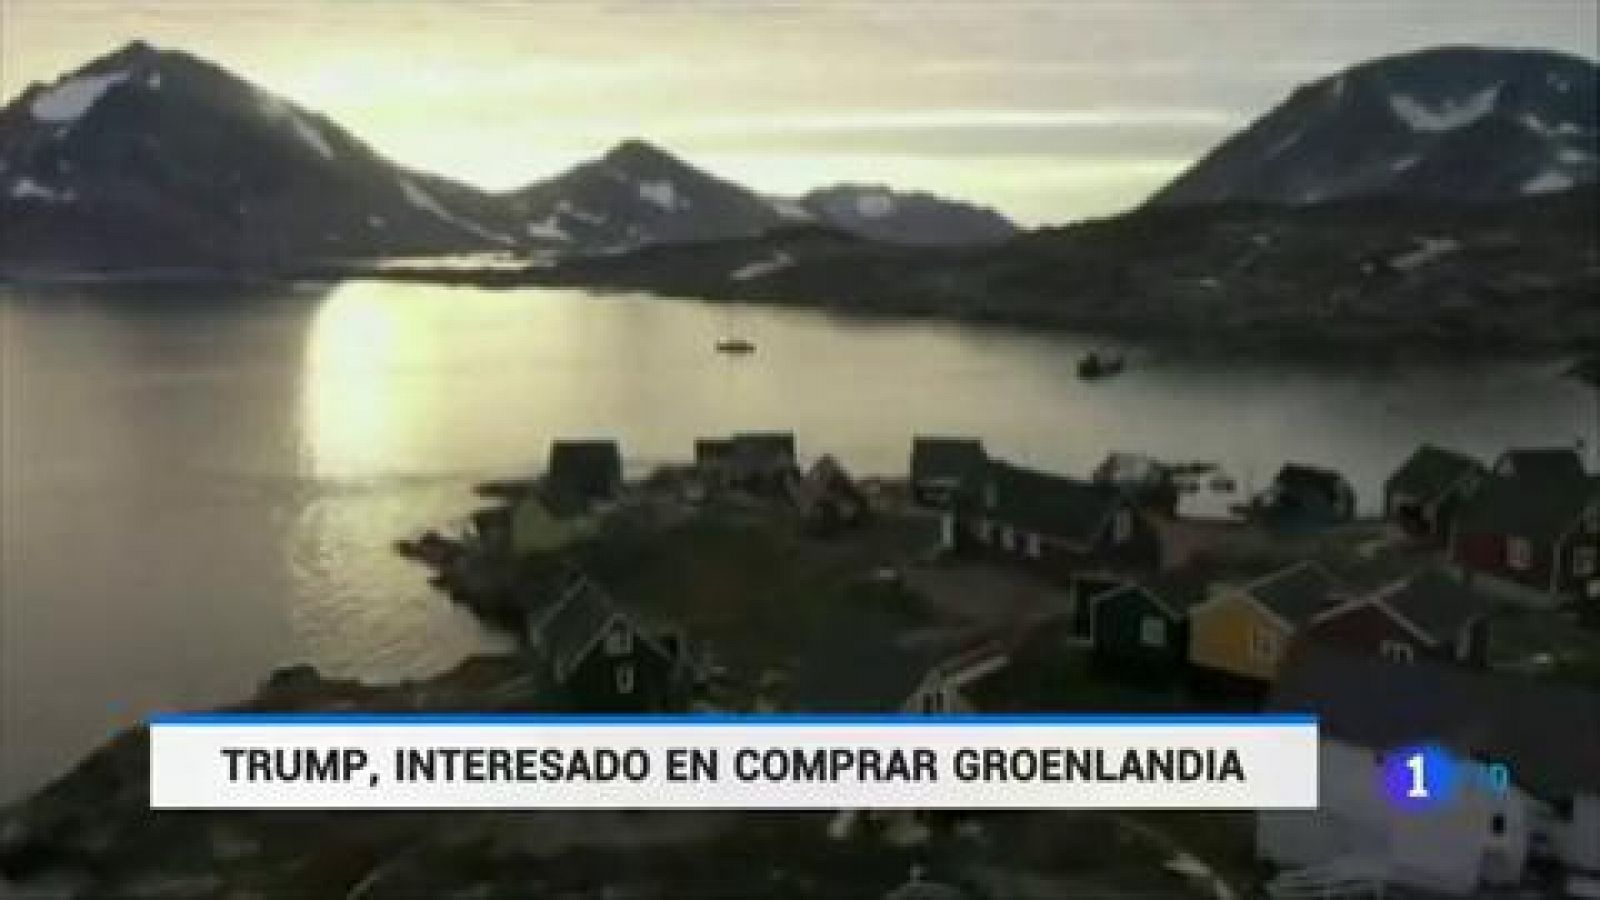 Trump quiere comprar Groenlandia y los políticos daneses responden que "no está en venta"